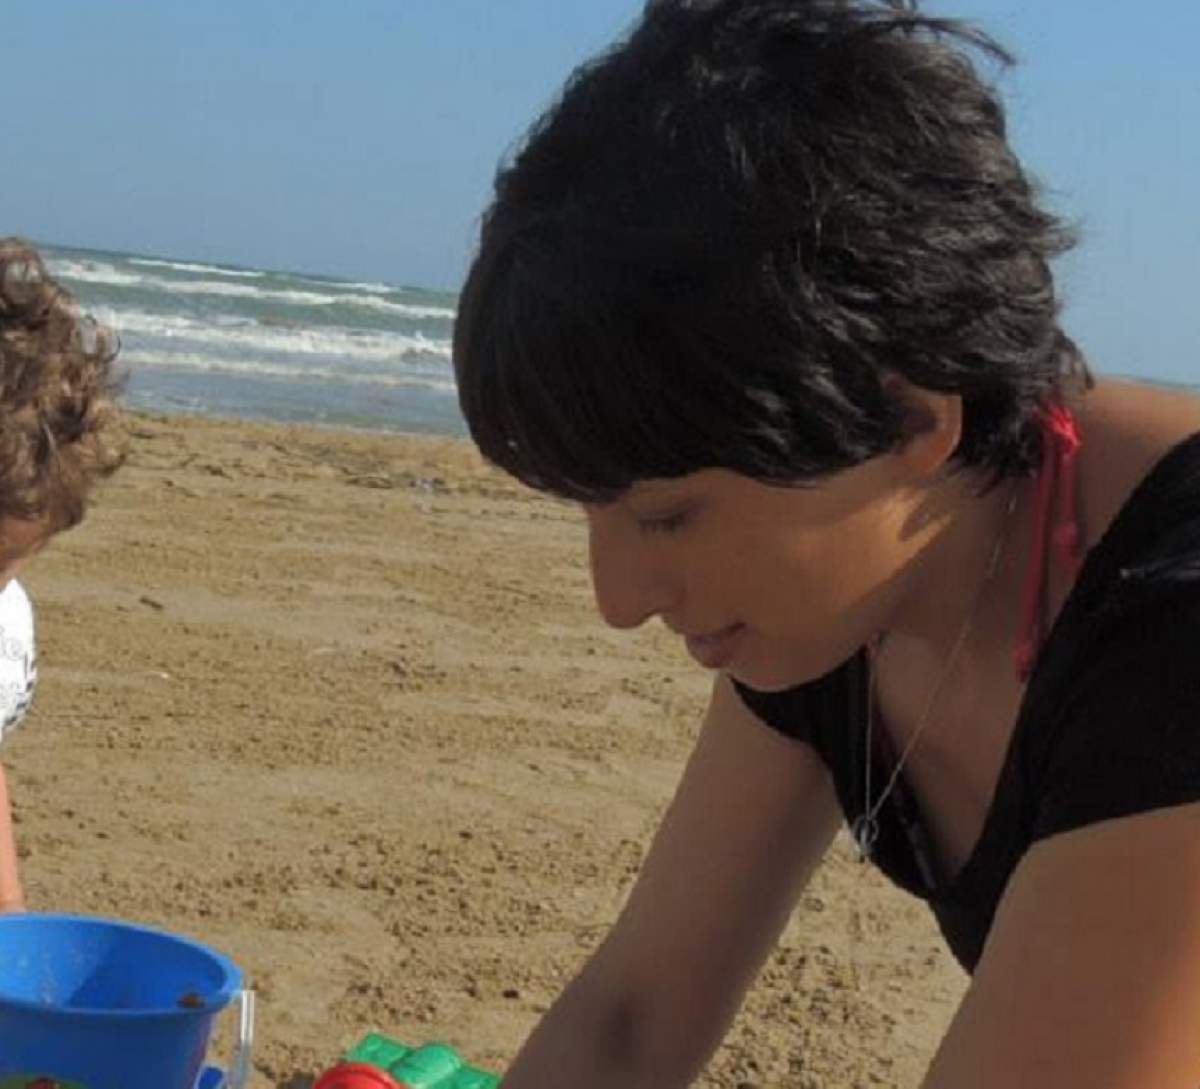 Dana a murit în Italia, după ce a intrat în mare şi a leşinat. Copiii ei se jucau la câţiva metri distanţă